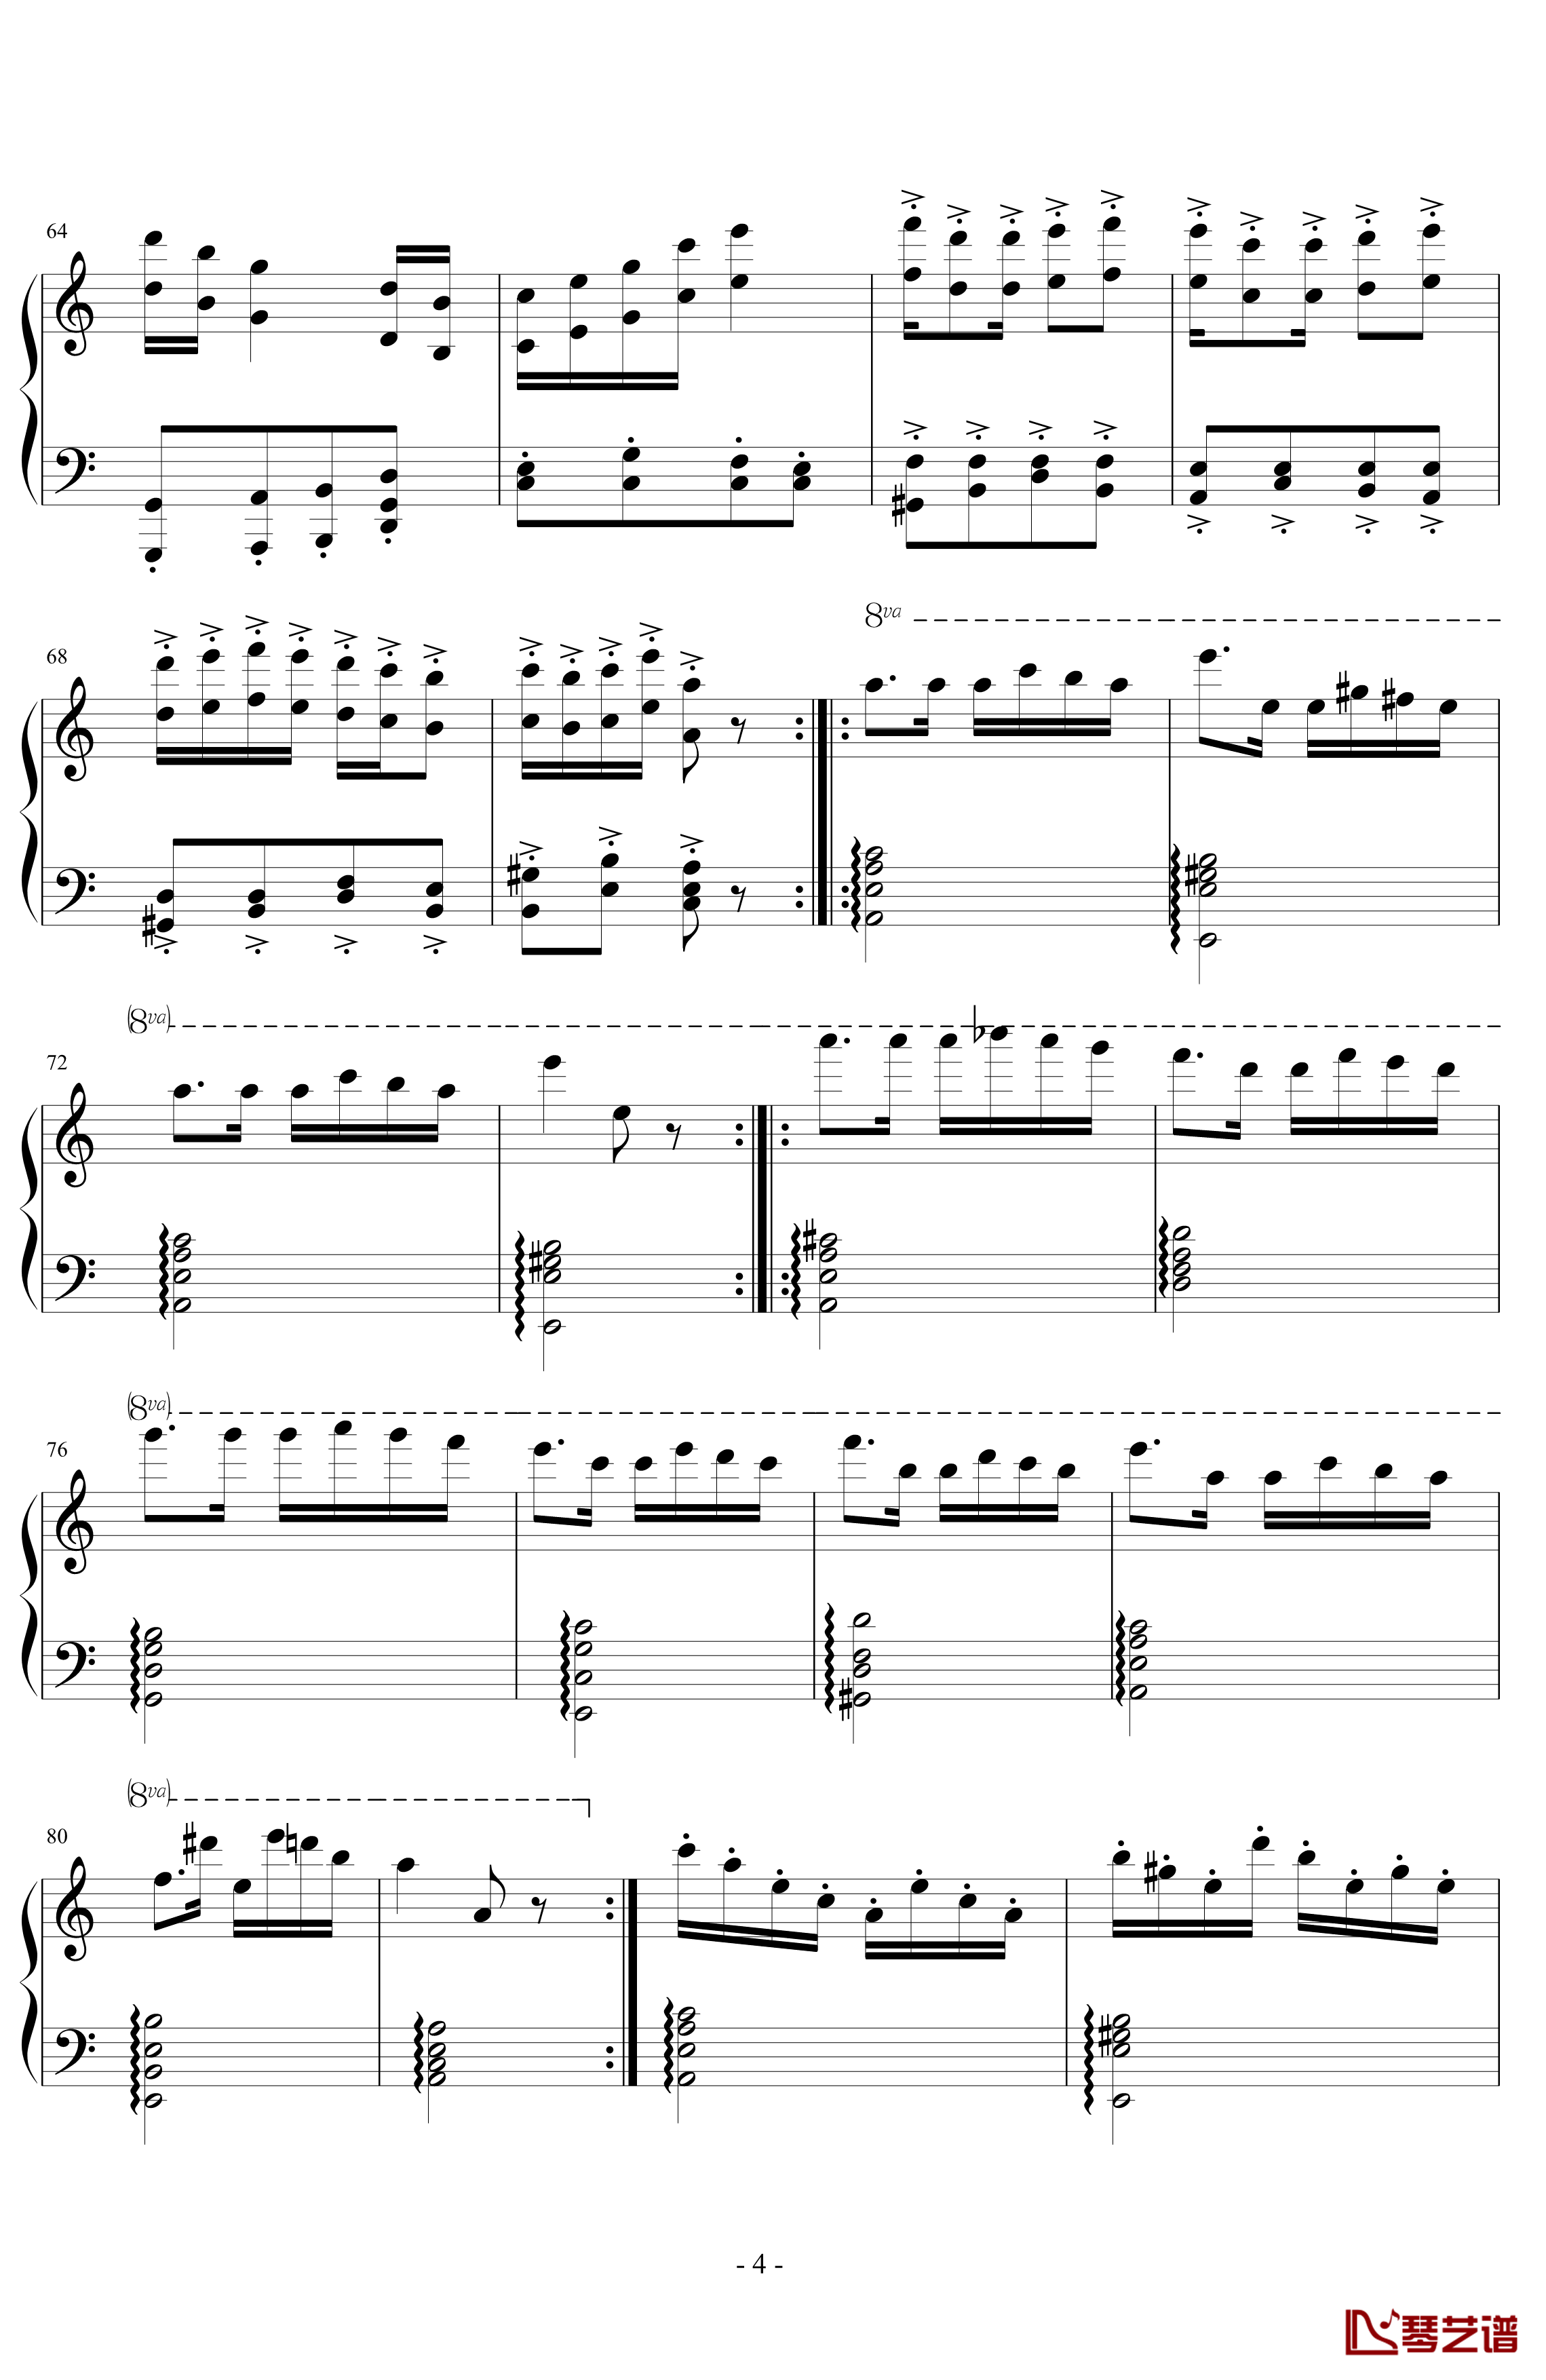 经典主题变奏曲钢琴谱-丁晓峰4